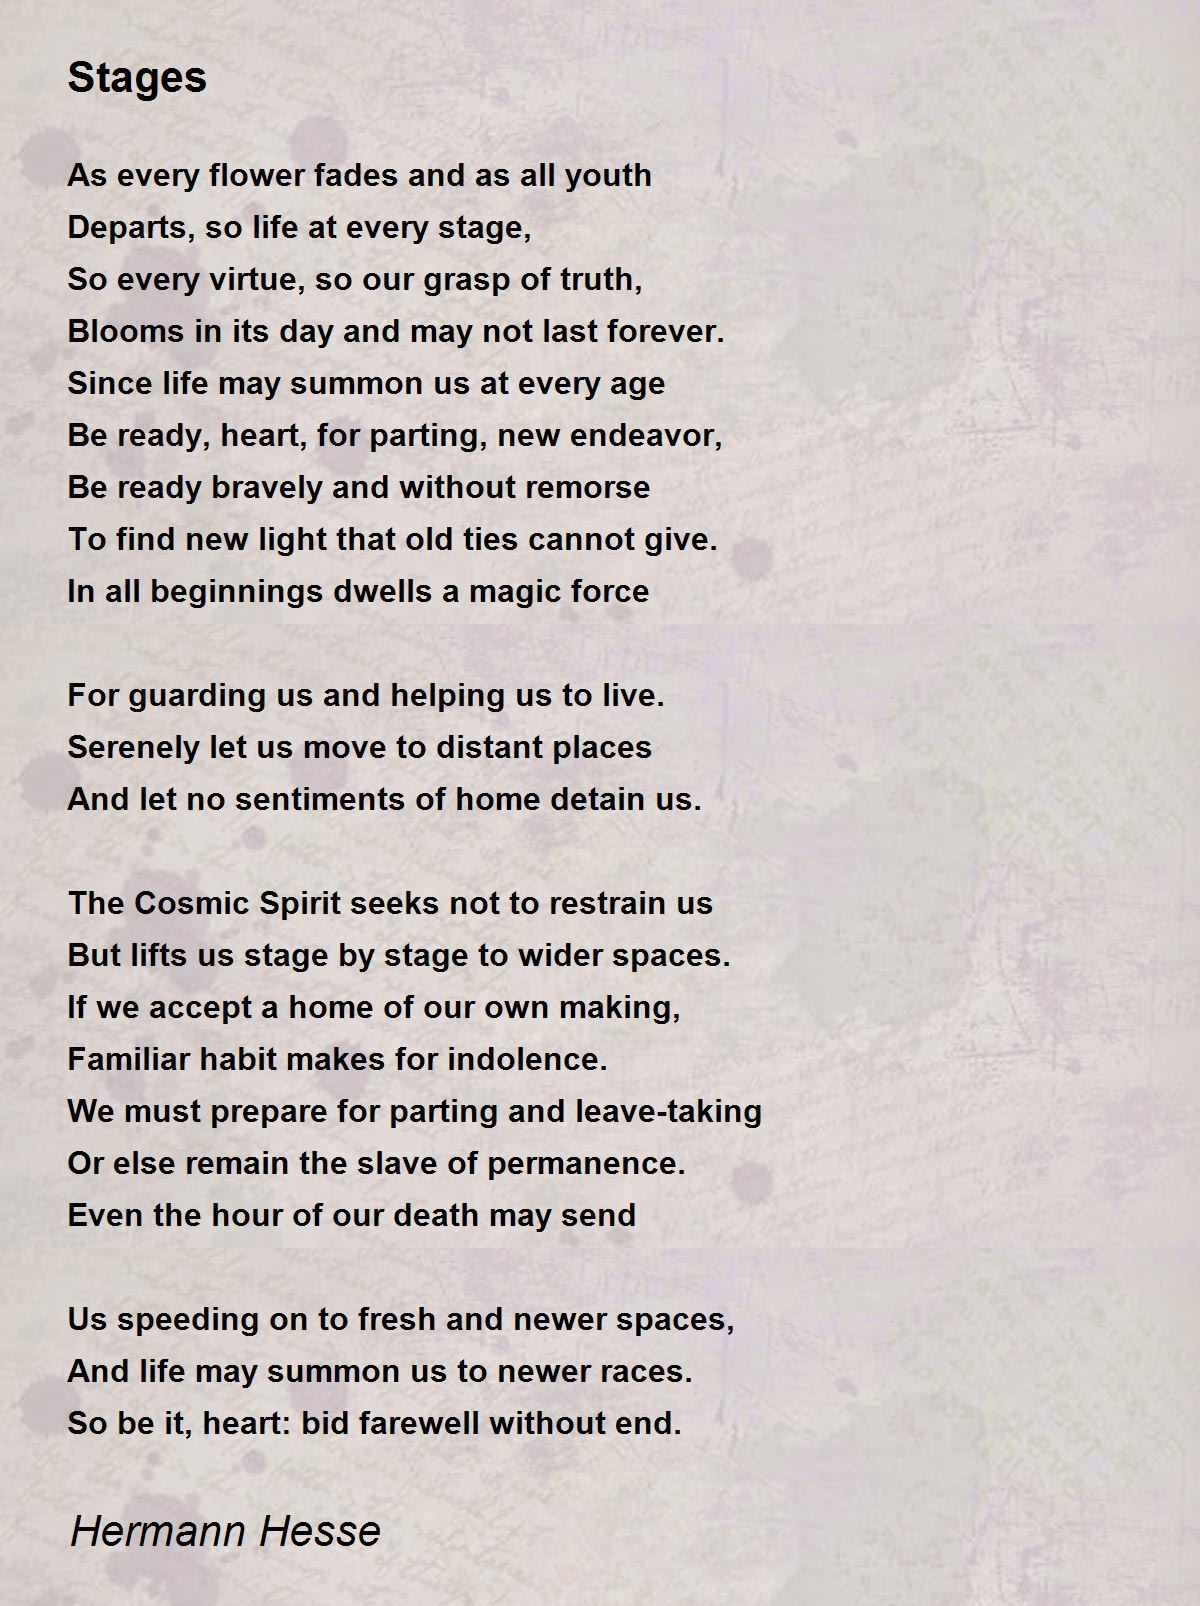 Stages Poem by Hermann Hesse - Poem Hunter